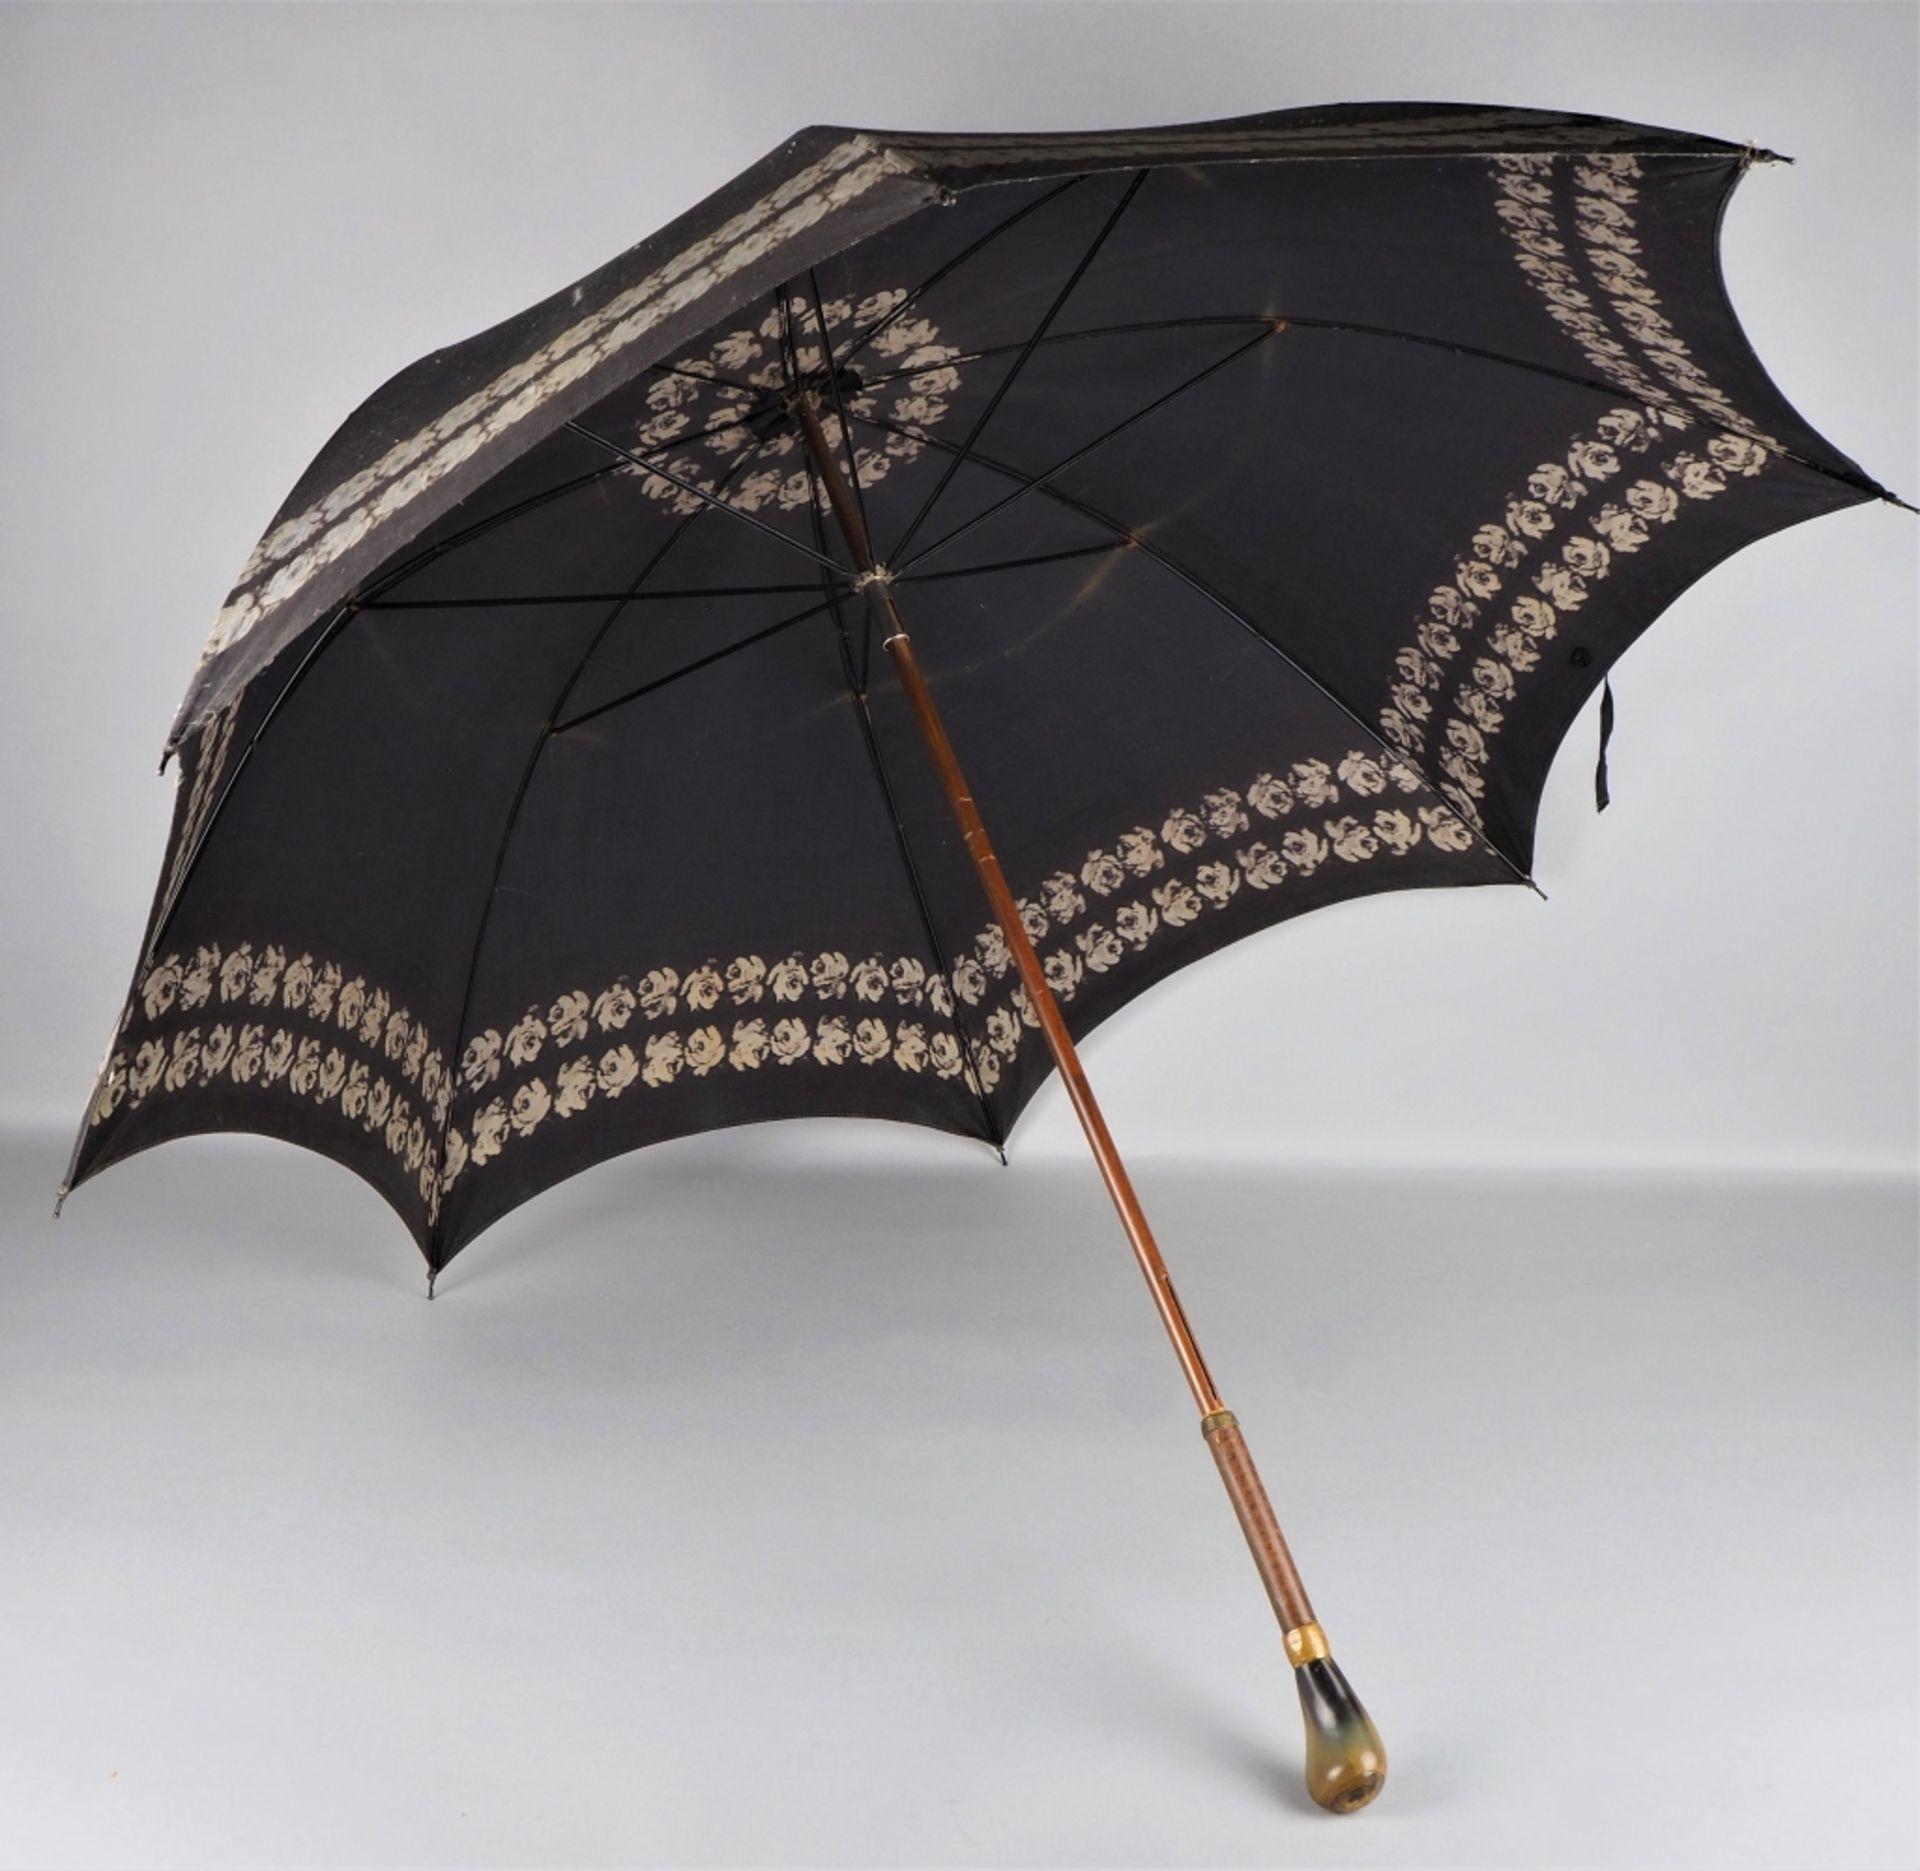 Antique umbrella / parasol around 1900 - Image 2 of 3